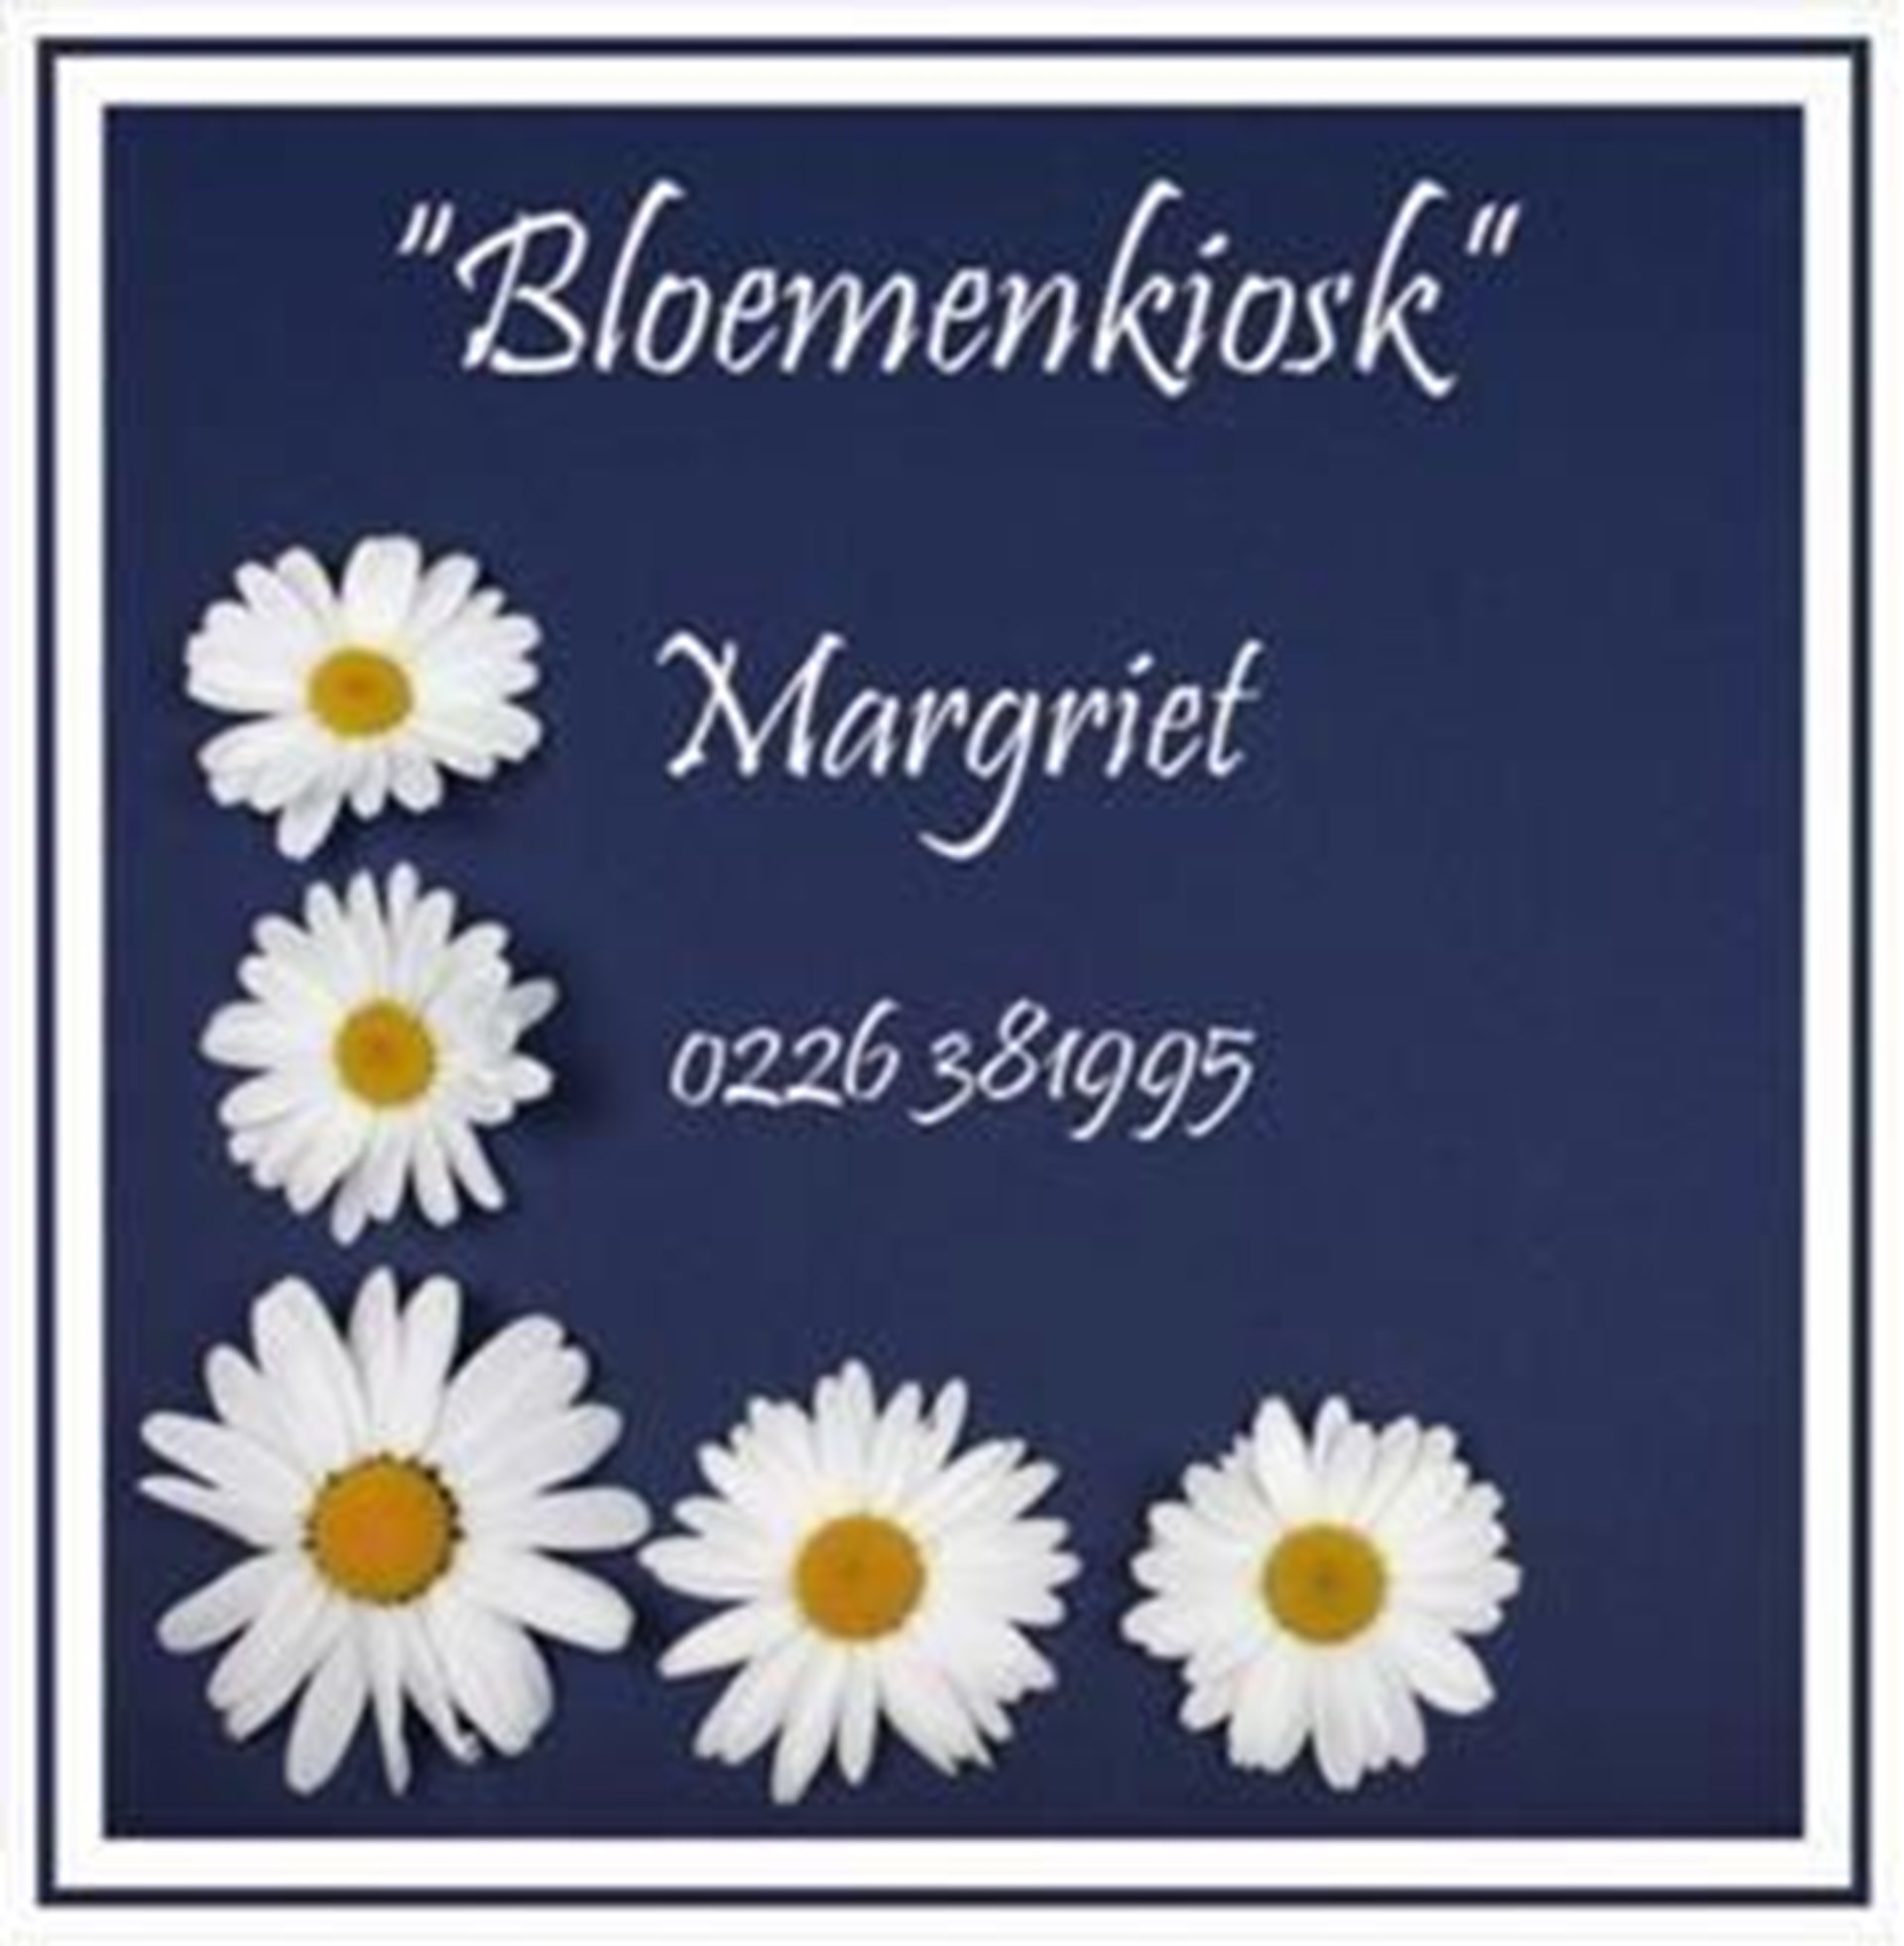 Bloemenkiosk Margriet banner